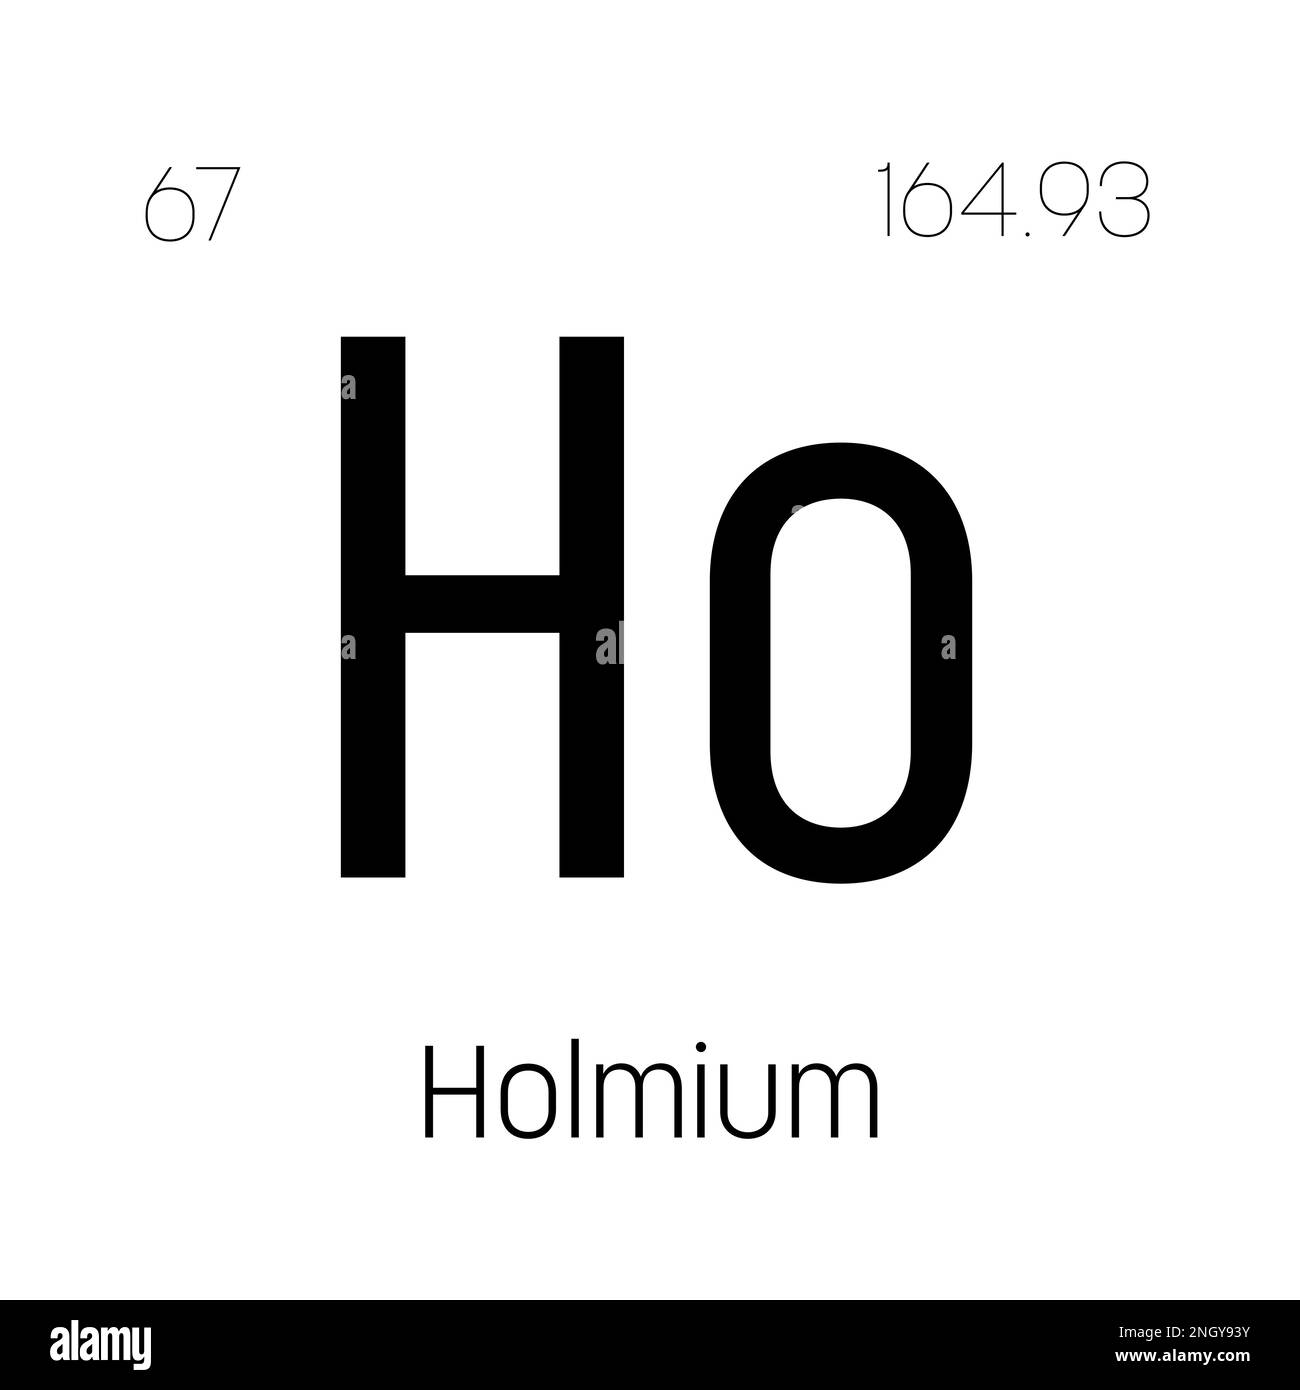 Hpotassium, HS, élément de table périodique avec nom, symbole, numéro atomique et poids. Élément synthétique sans utilisation commerciale ou industrielle connue, mais utilisé dans la recherche scientifique. Illustration de Vecteur